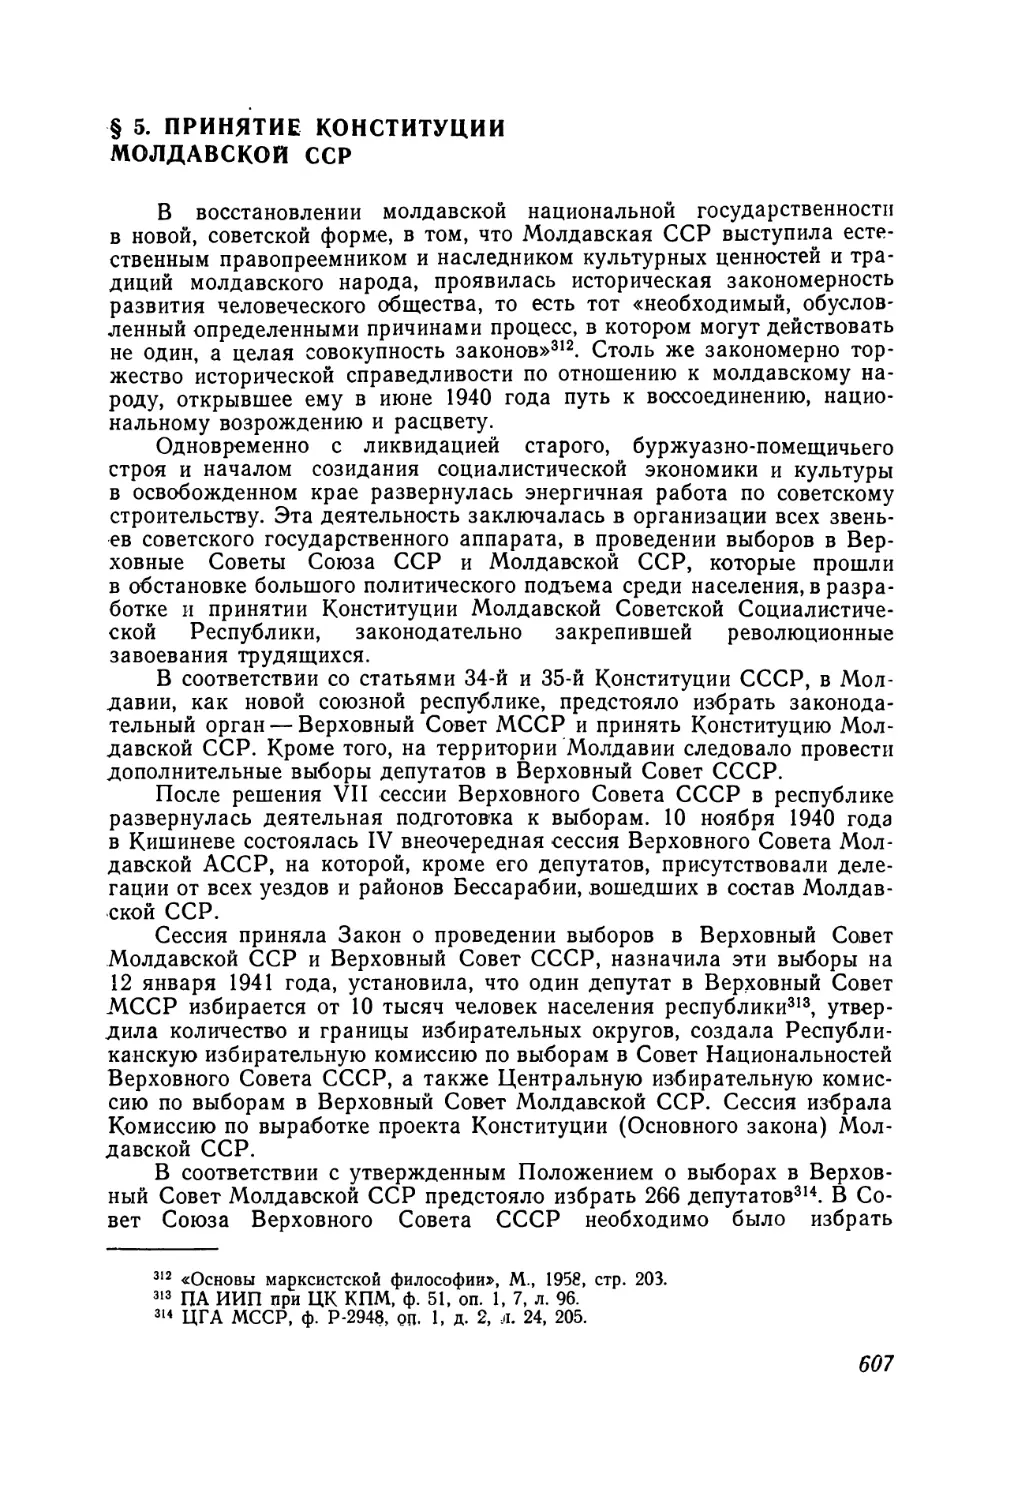 § 5. Принятие Конституции Молдавской ССР